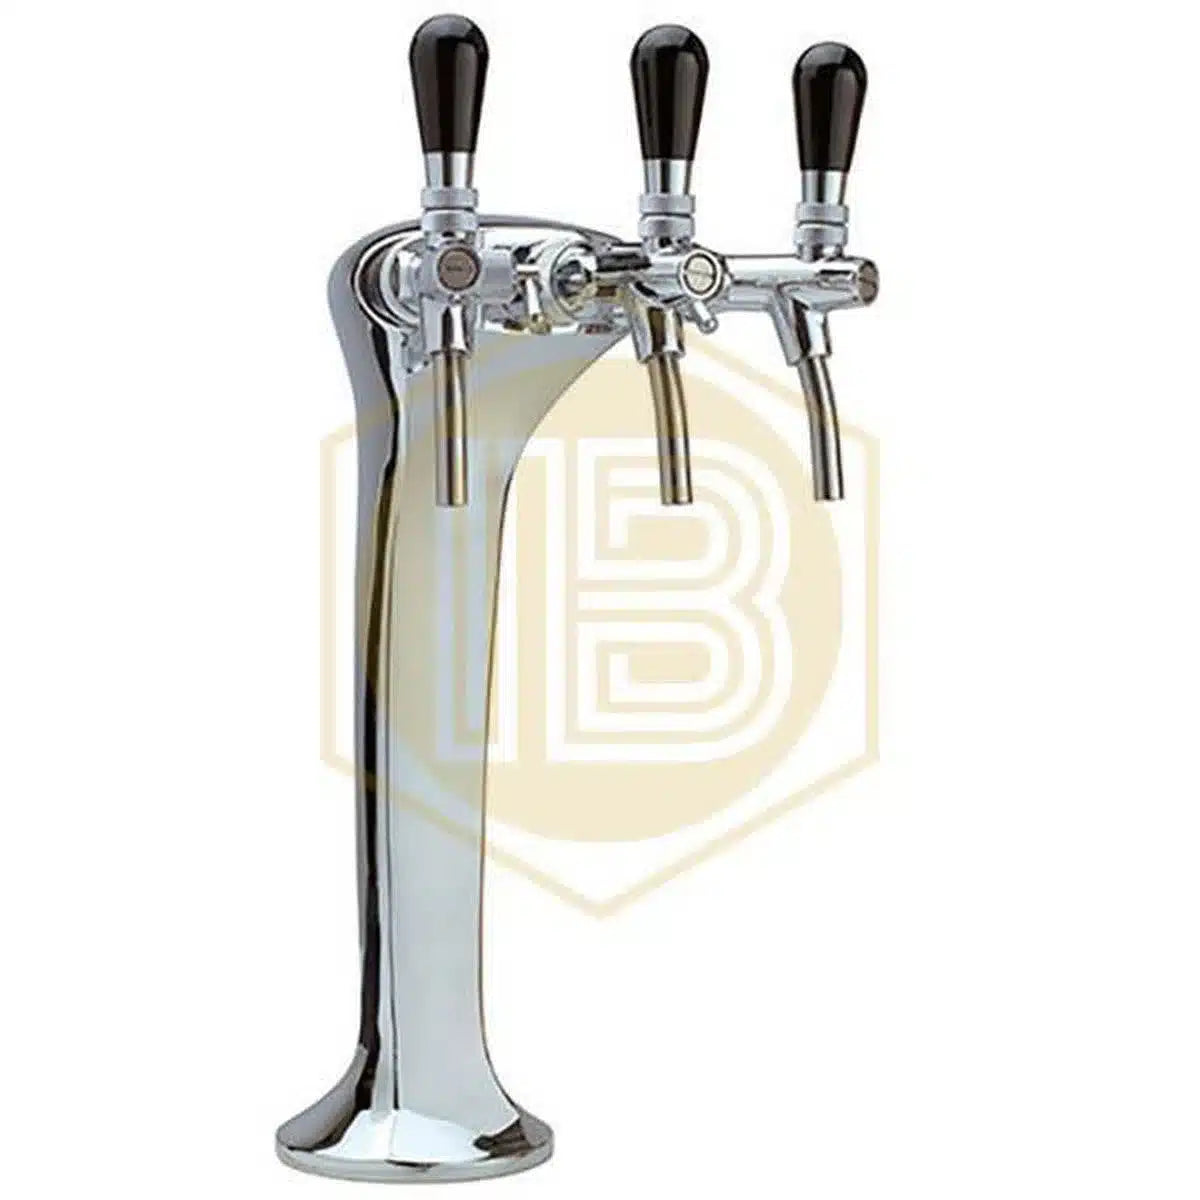 ▶️ Grifo de Cerveza para Dispensar Bebida – Install Beer